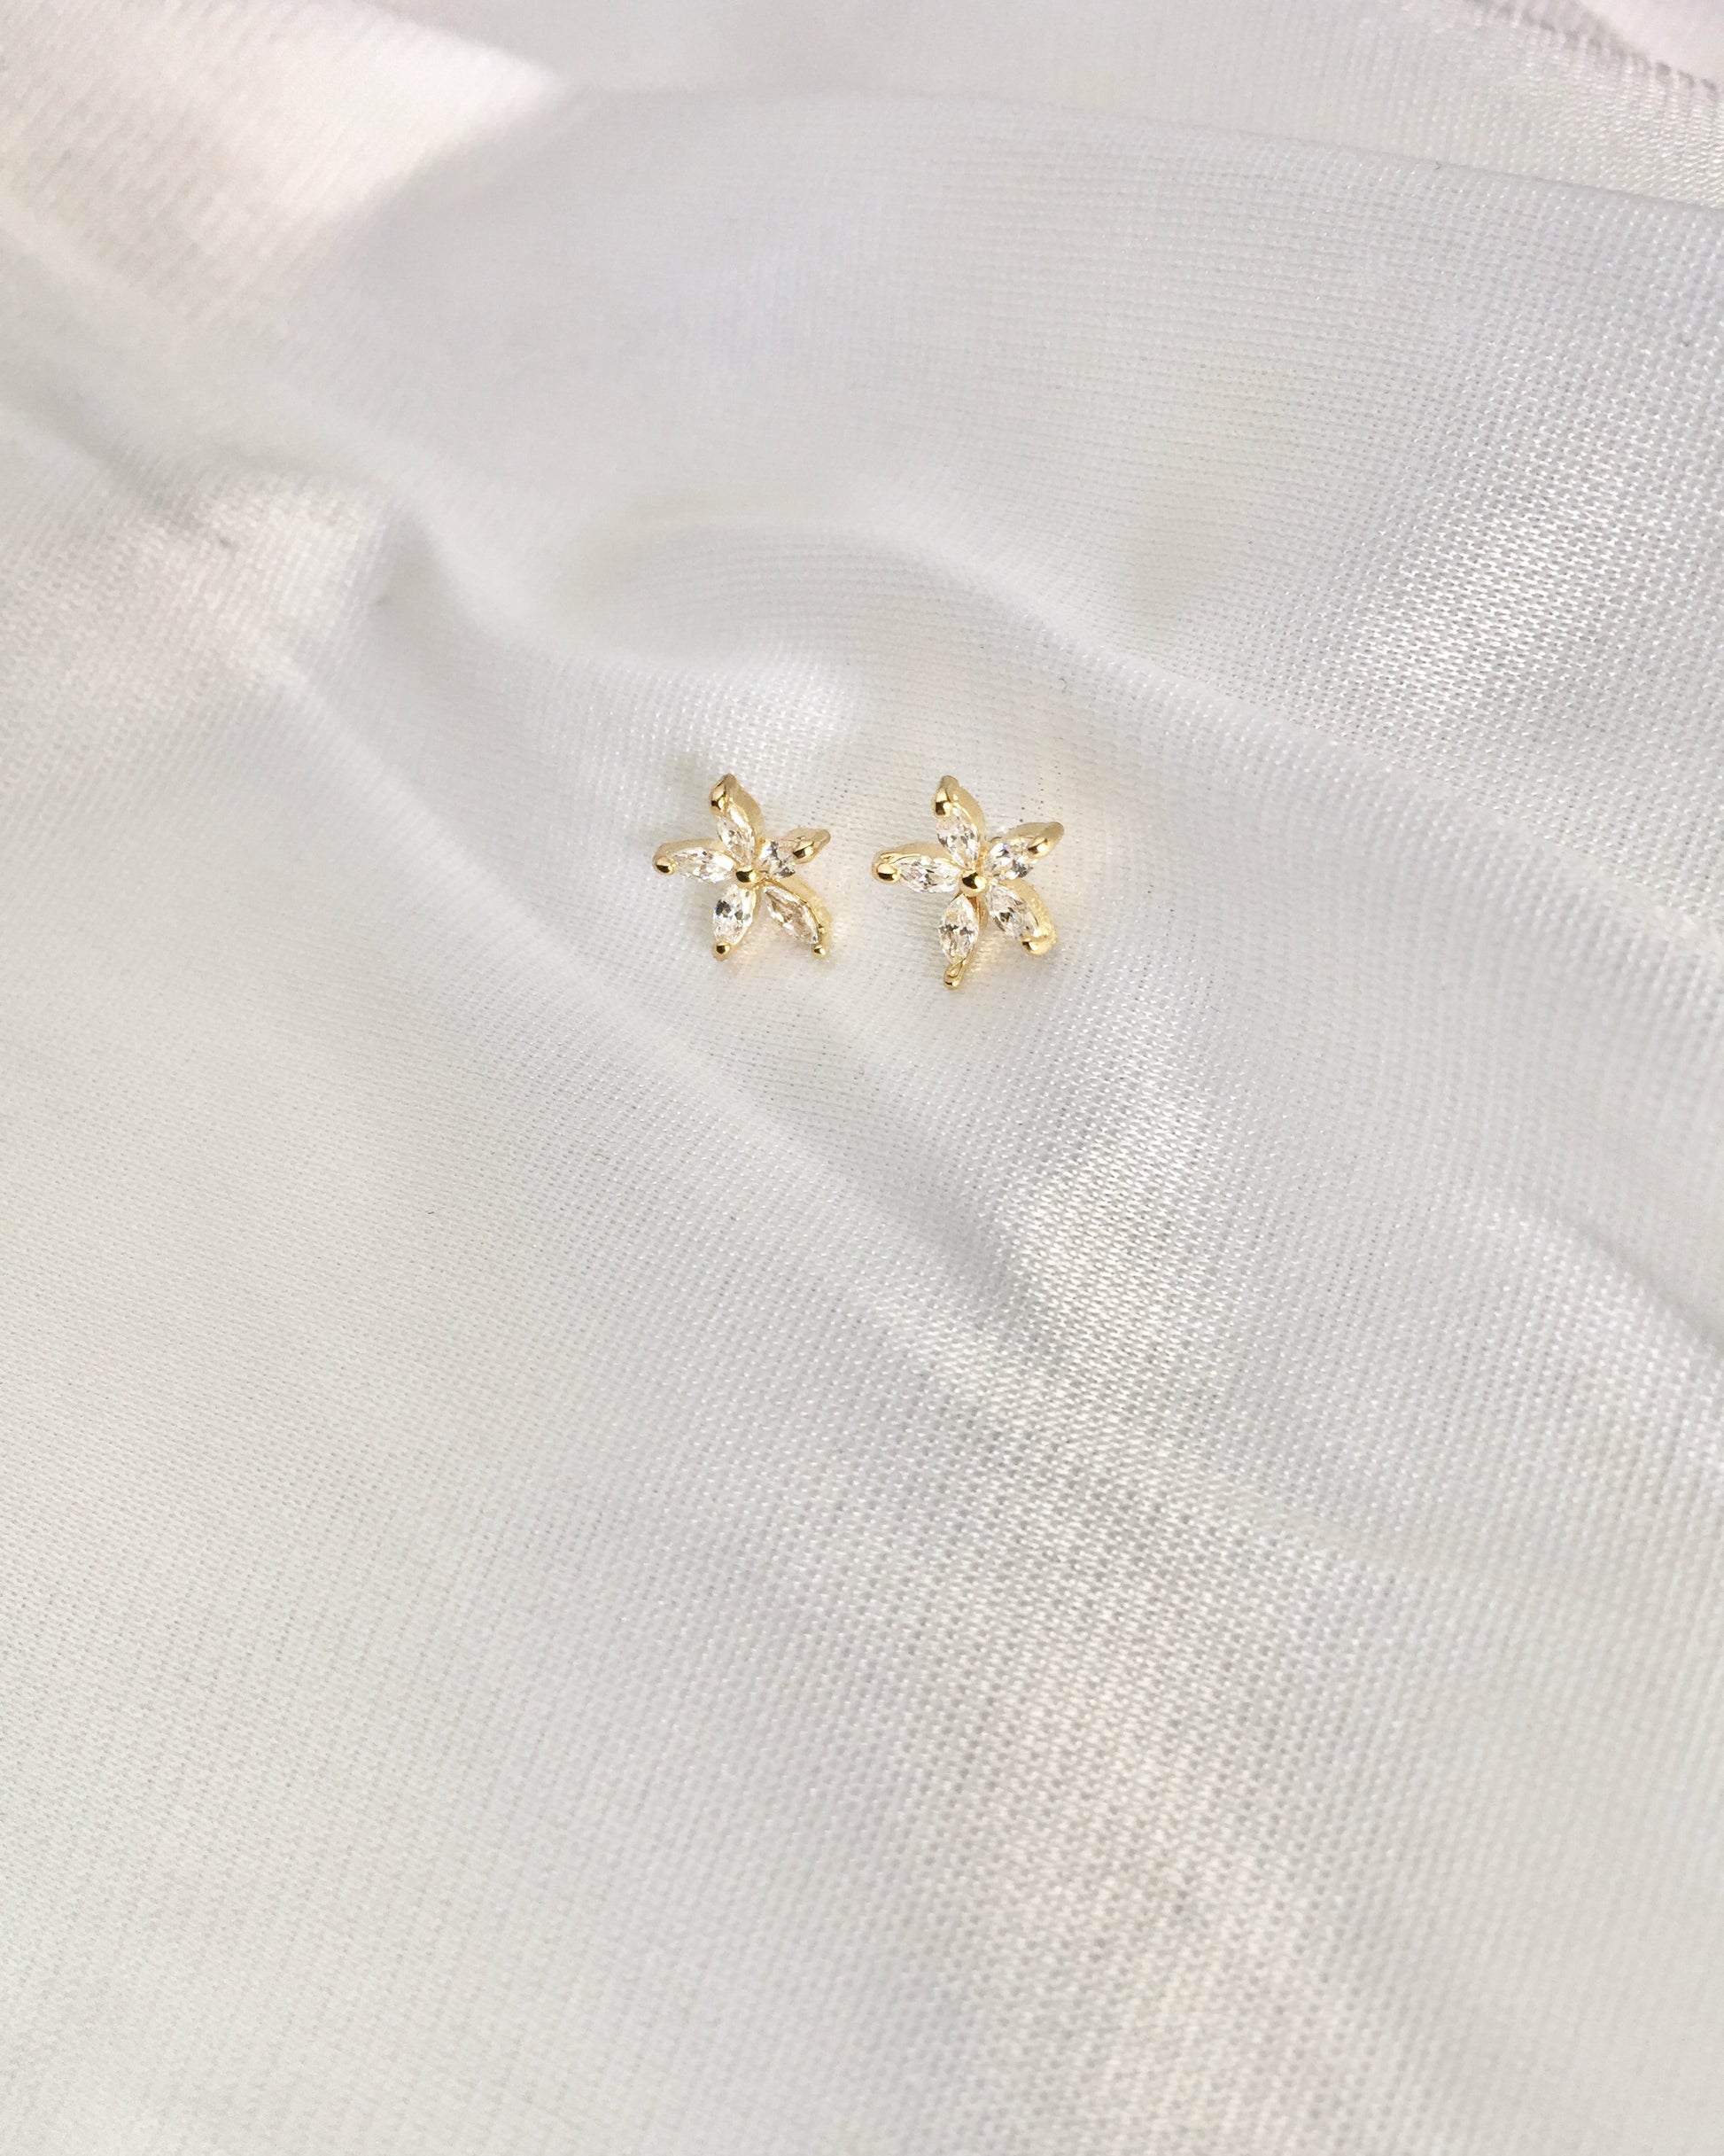 Flower CZ Stud Earrings | Dainty Stud Earrings | Delicate Stud Earrings | IB Jewelry